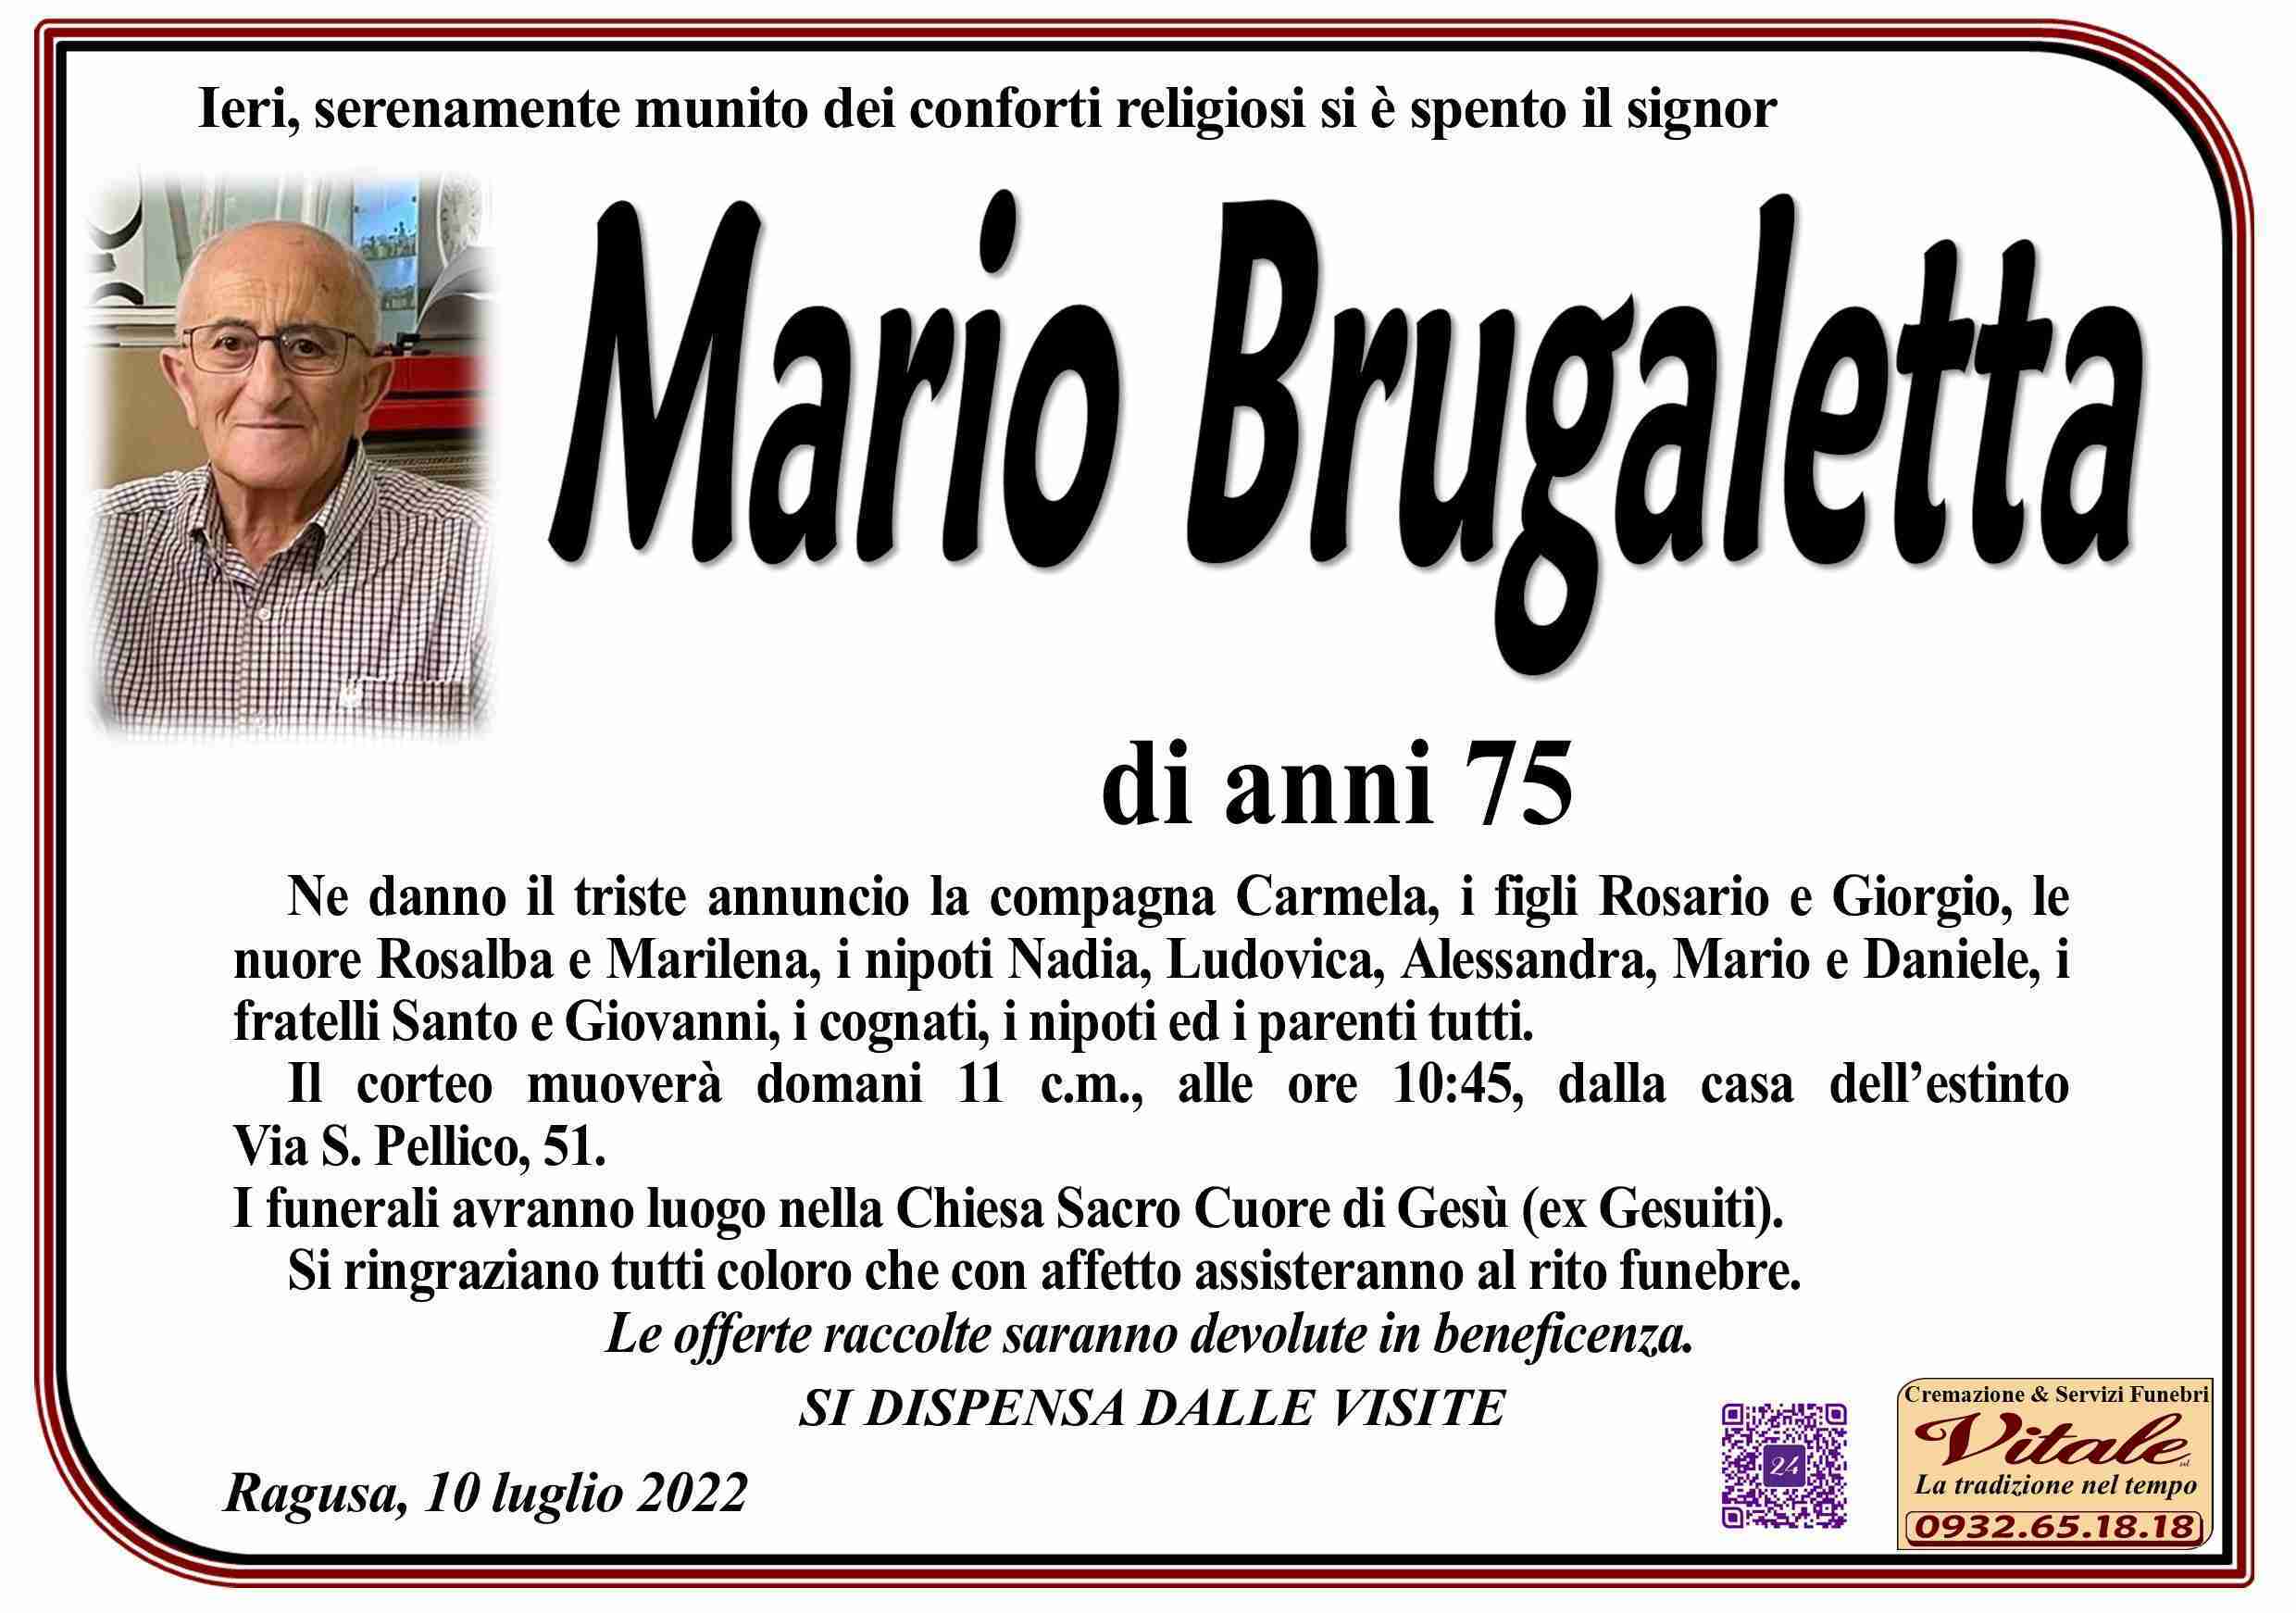 Mario Brugaletta